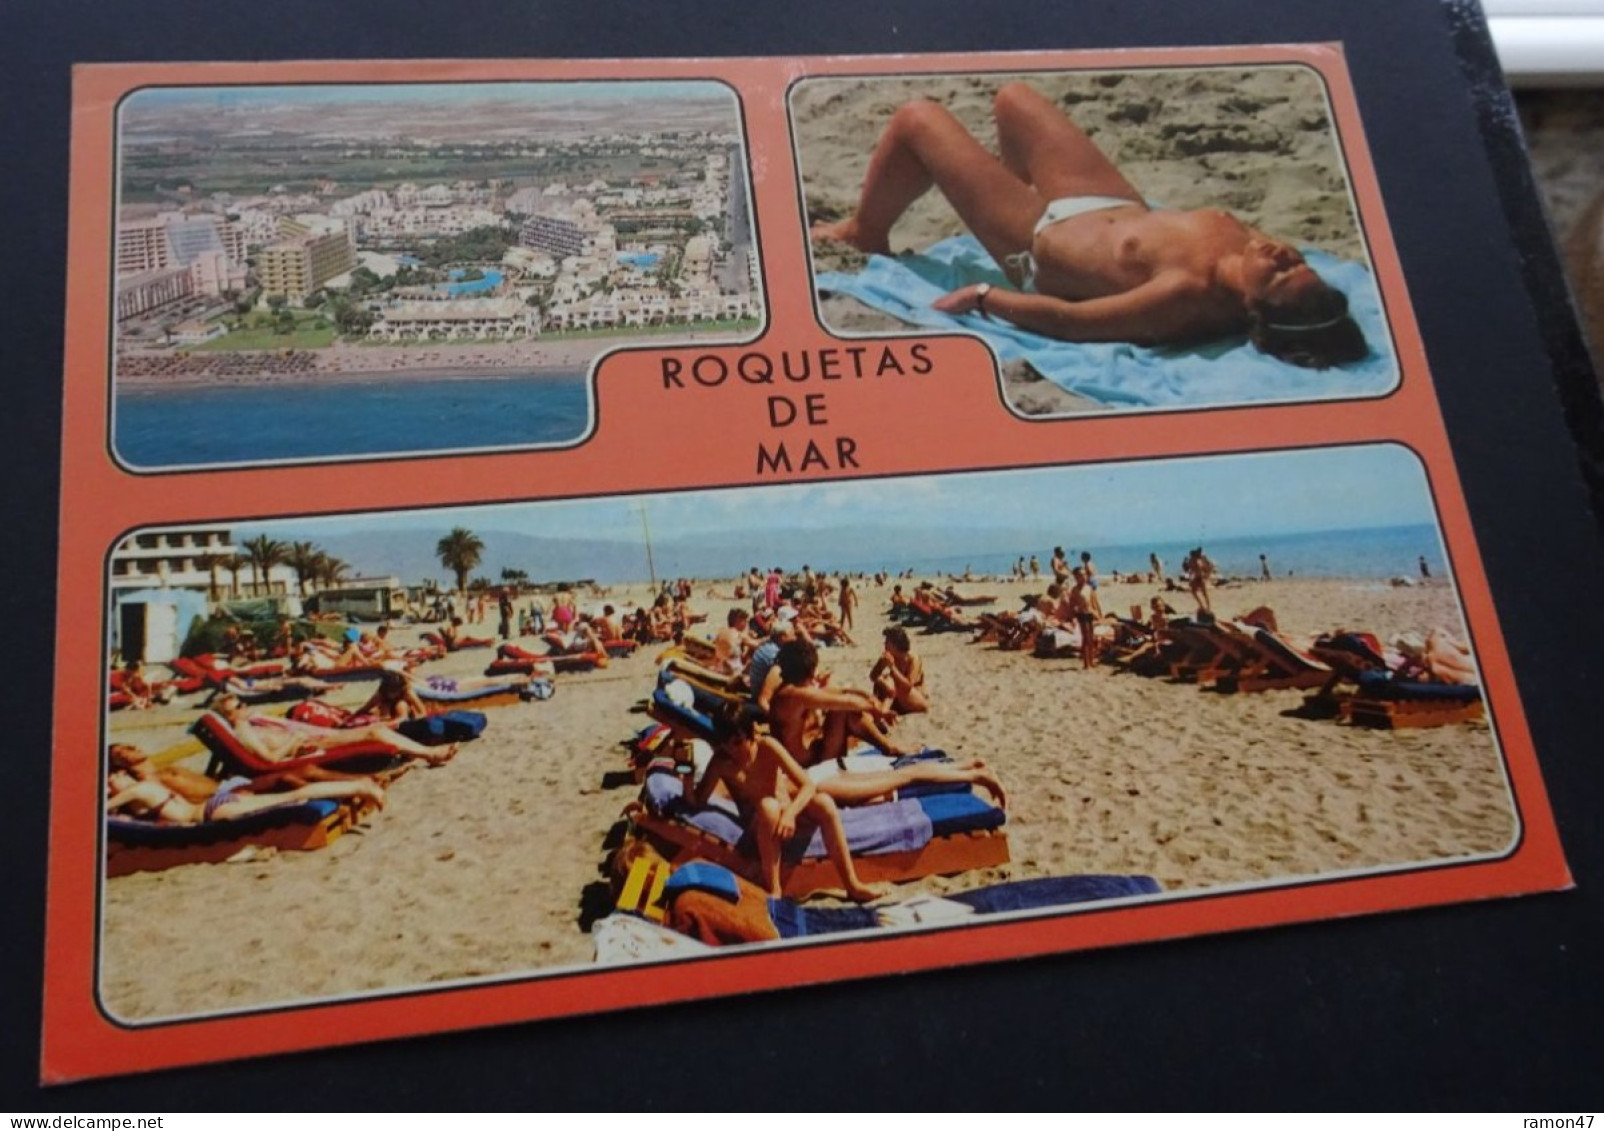 Roquetas De Mar, Almeria - Vistas Diversas - Postales Hnos Galiana, Benidorm - # 29 - Almería